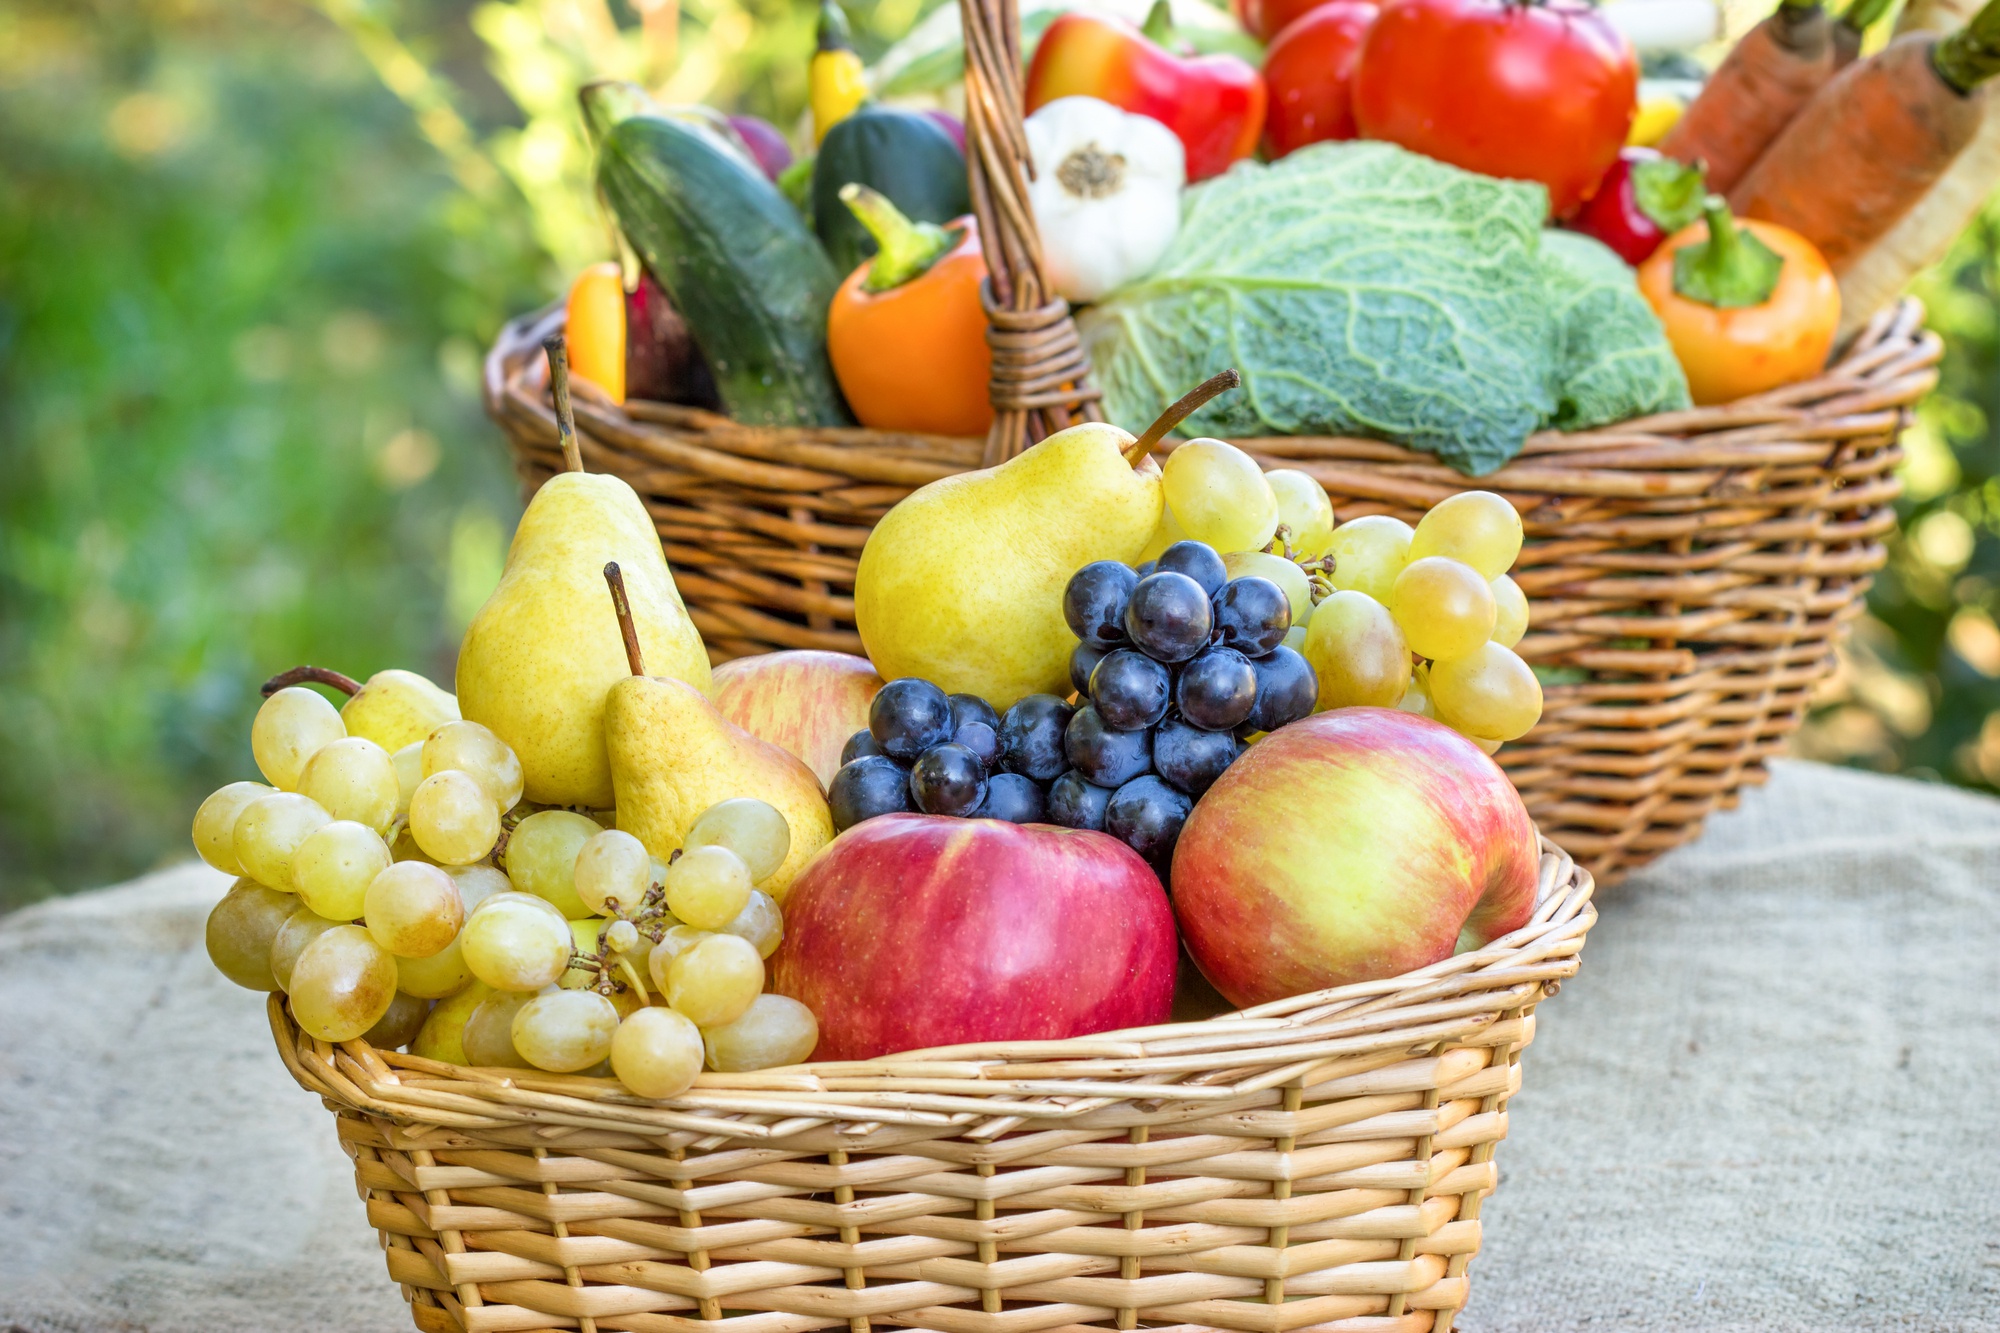 Download mobile wallpaper Fruits, Food, Apple, Grapes, Basket, Vegetable, Pear, Fruits & Vegetables for free.